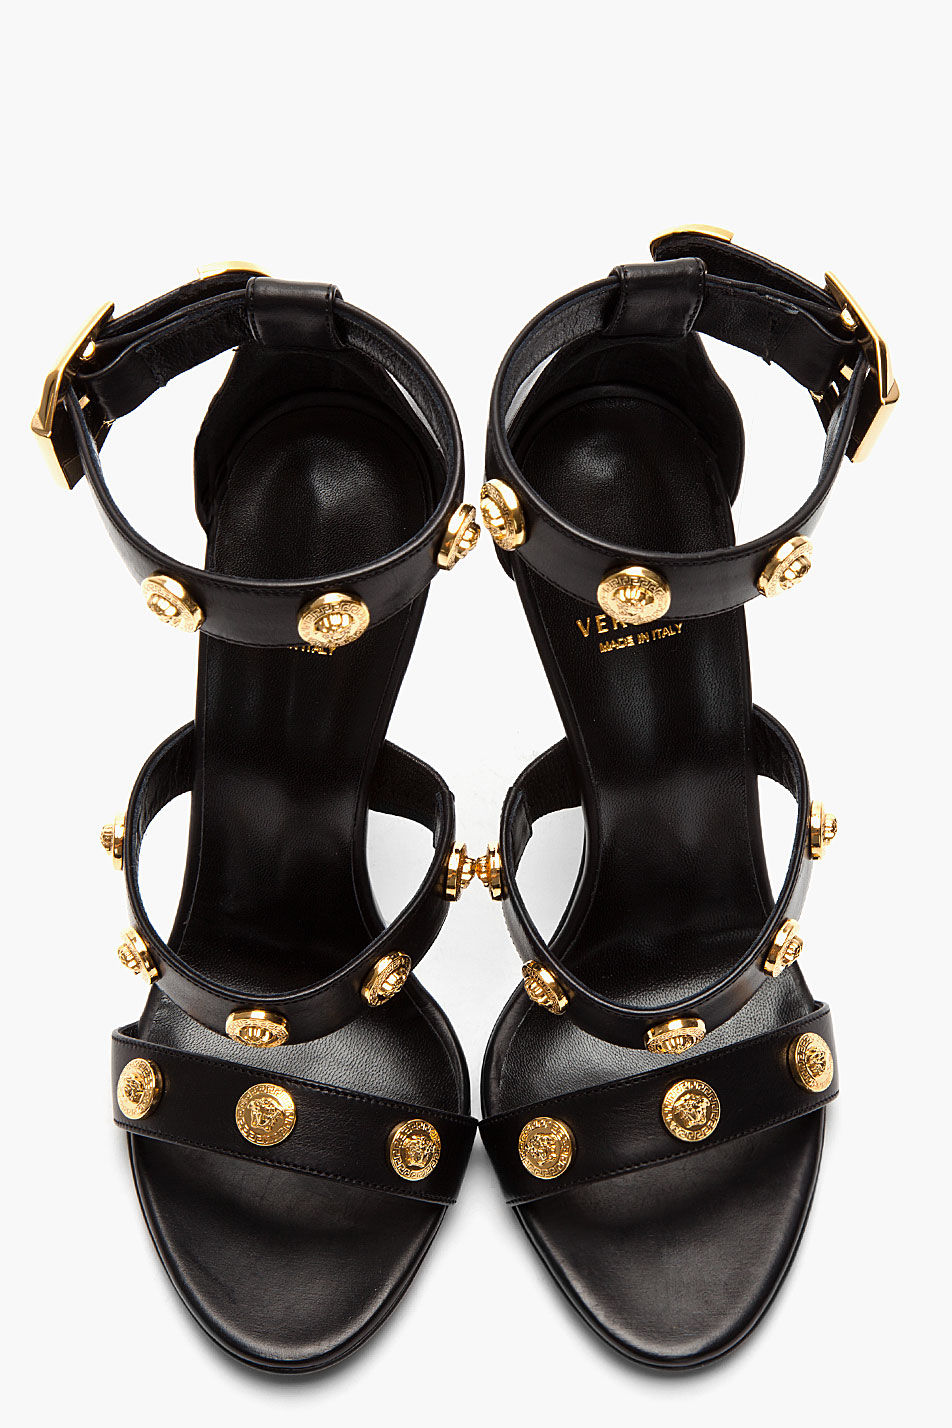 VERSACE Buckle Heels in Black & Gold | FWRD